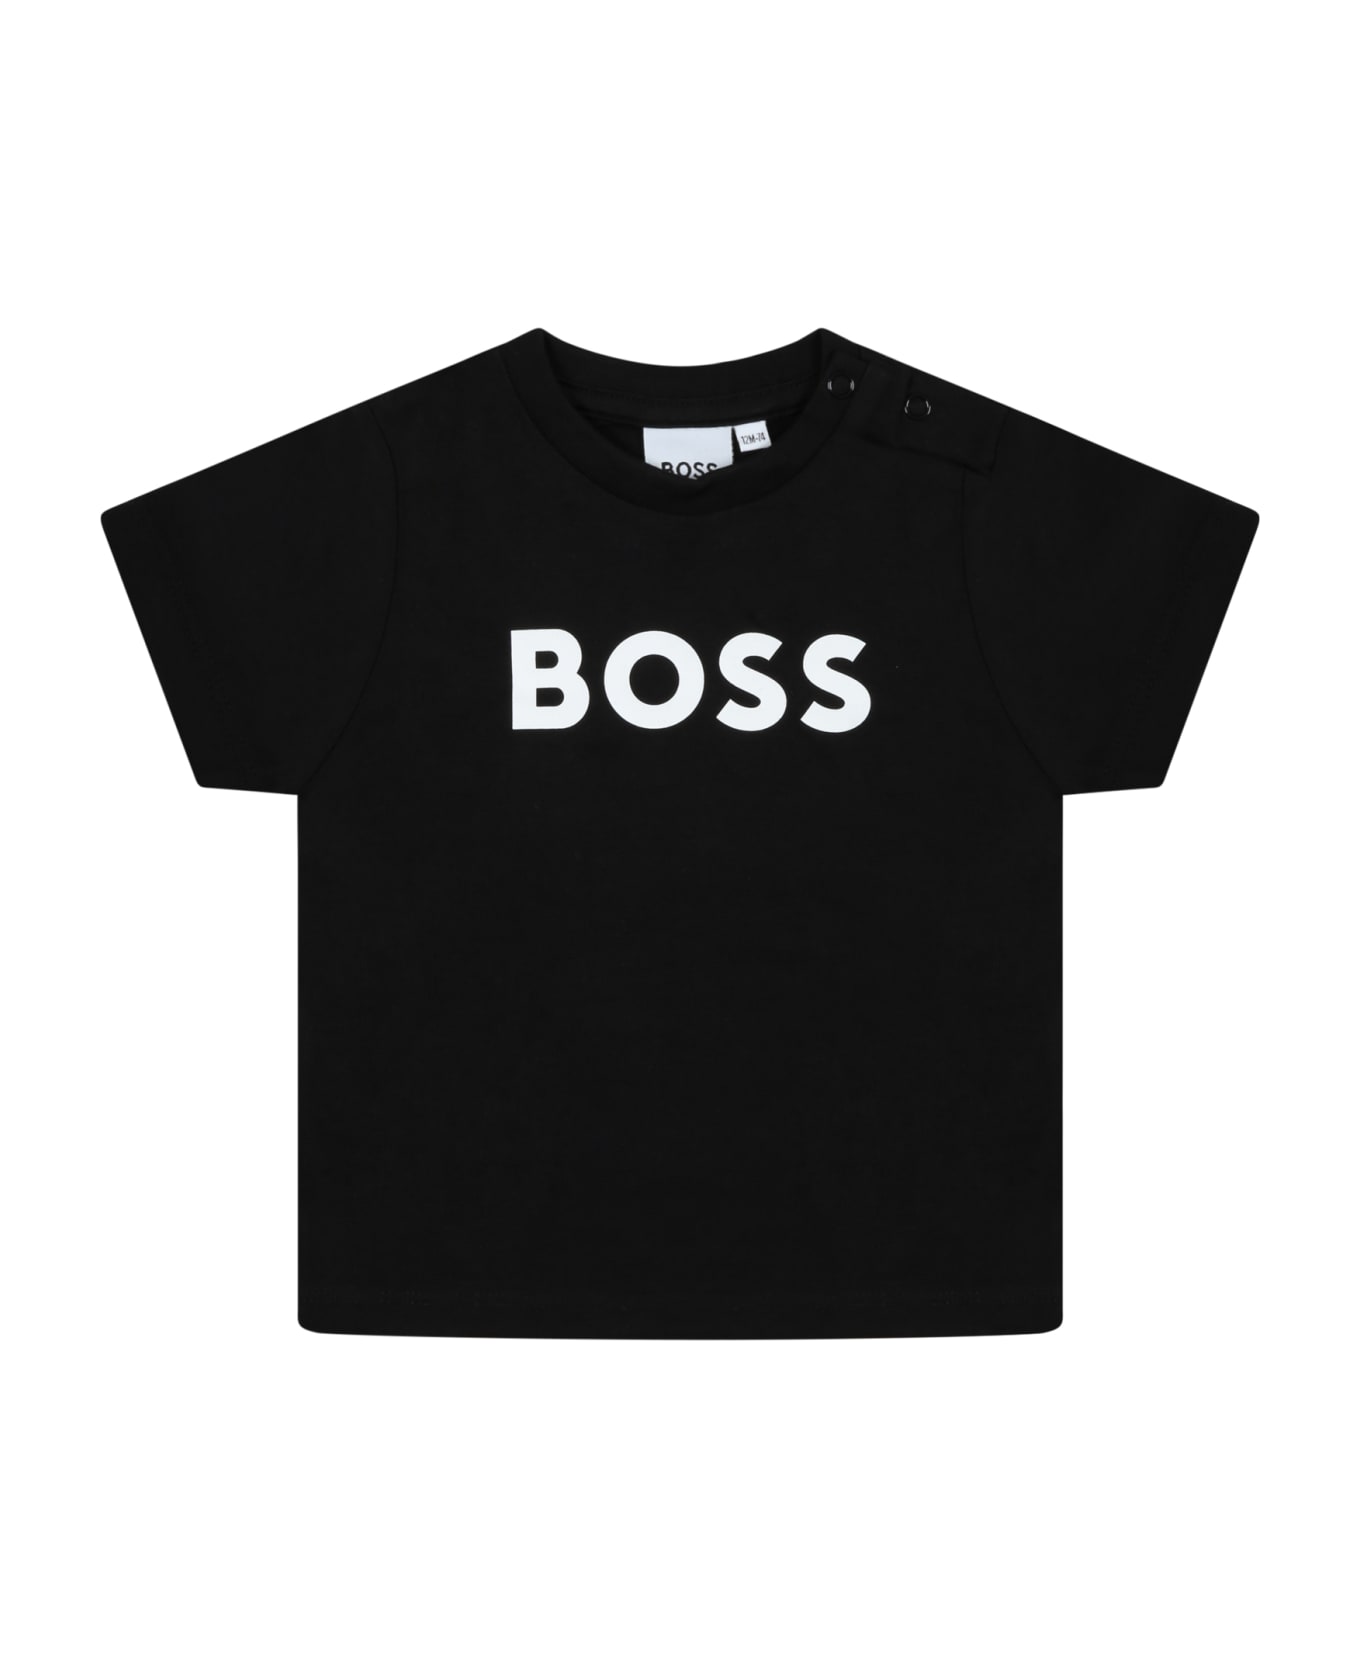 Hugo Boss Black T-shirt For Baby Boy With White Logo - Black